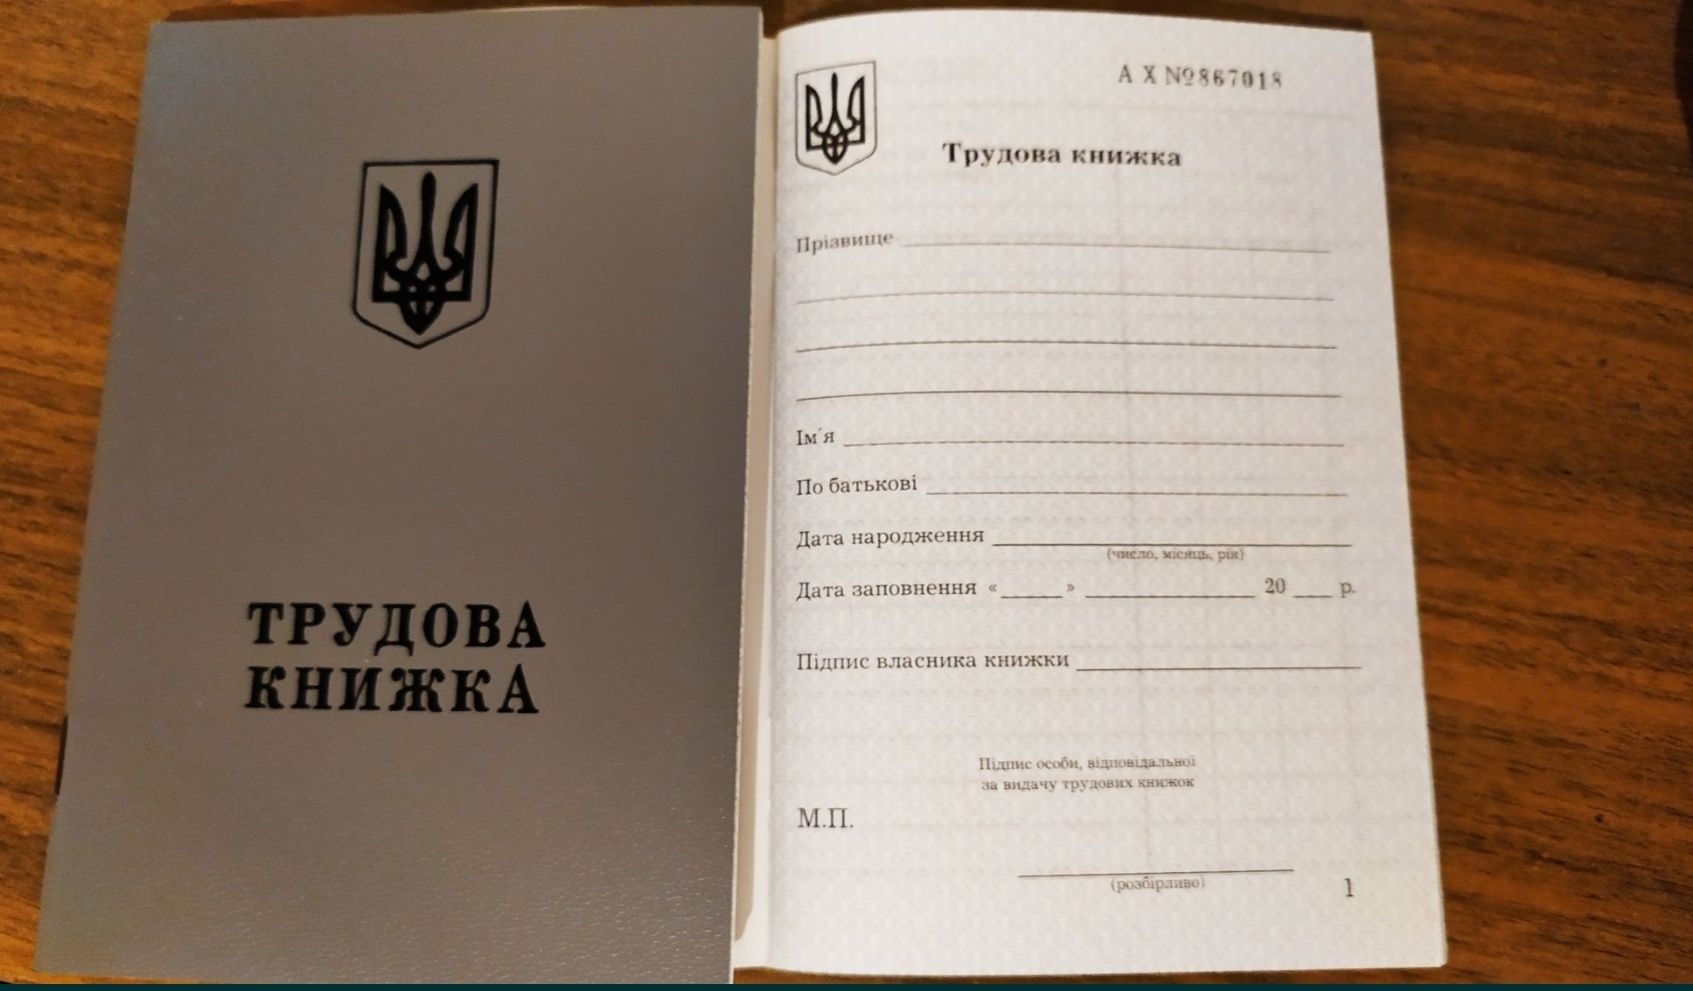 Трудовая книжка Украина 2001 г. выпуска, оригинал